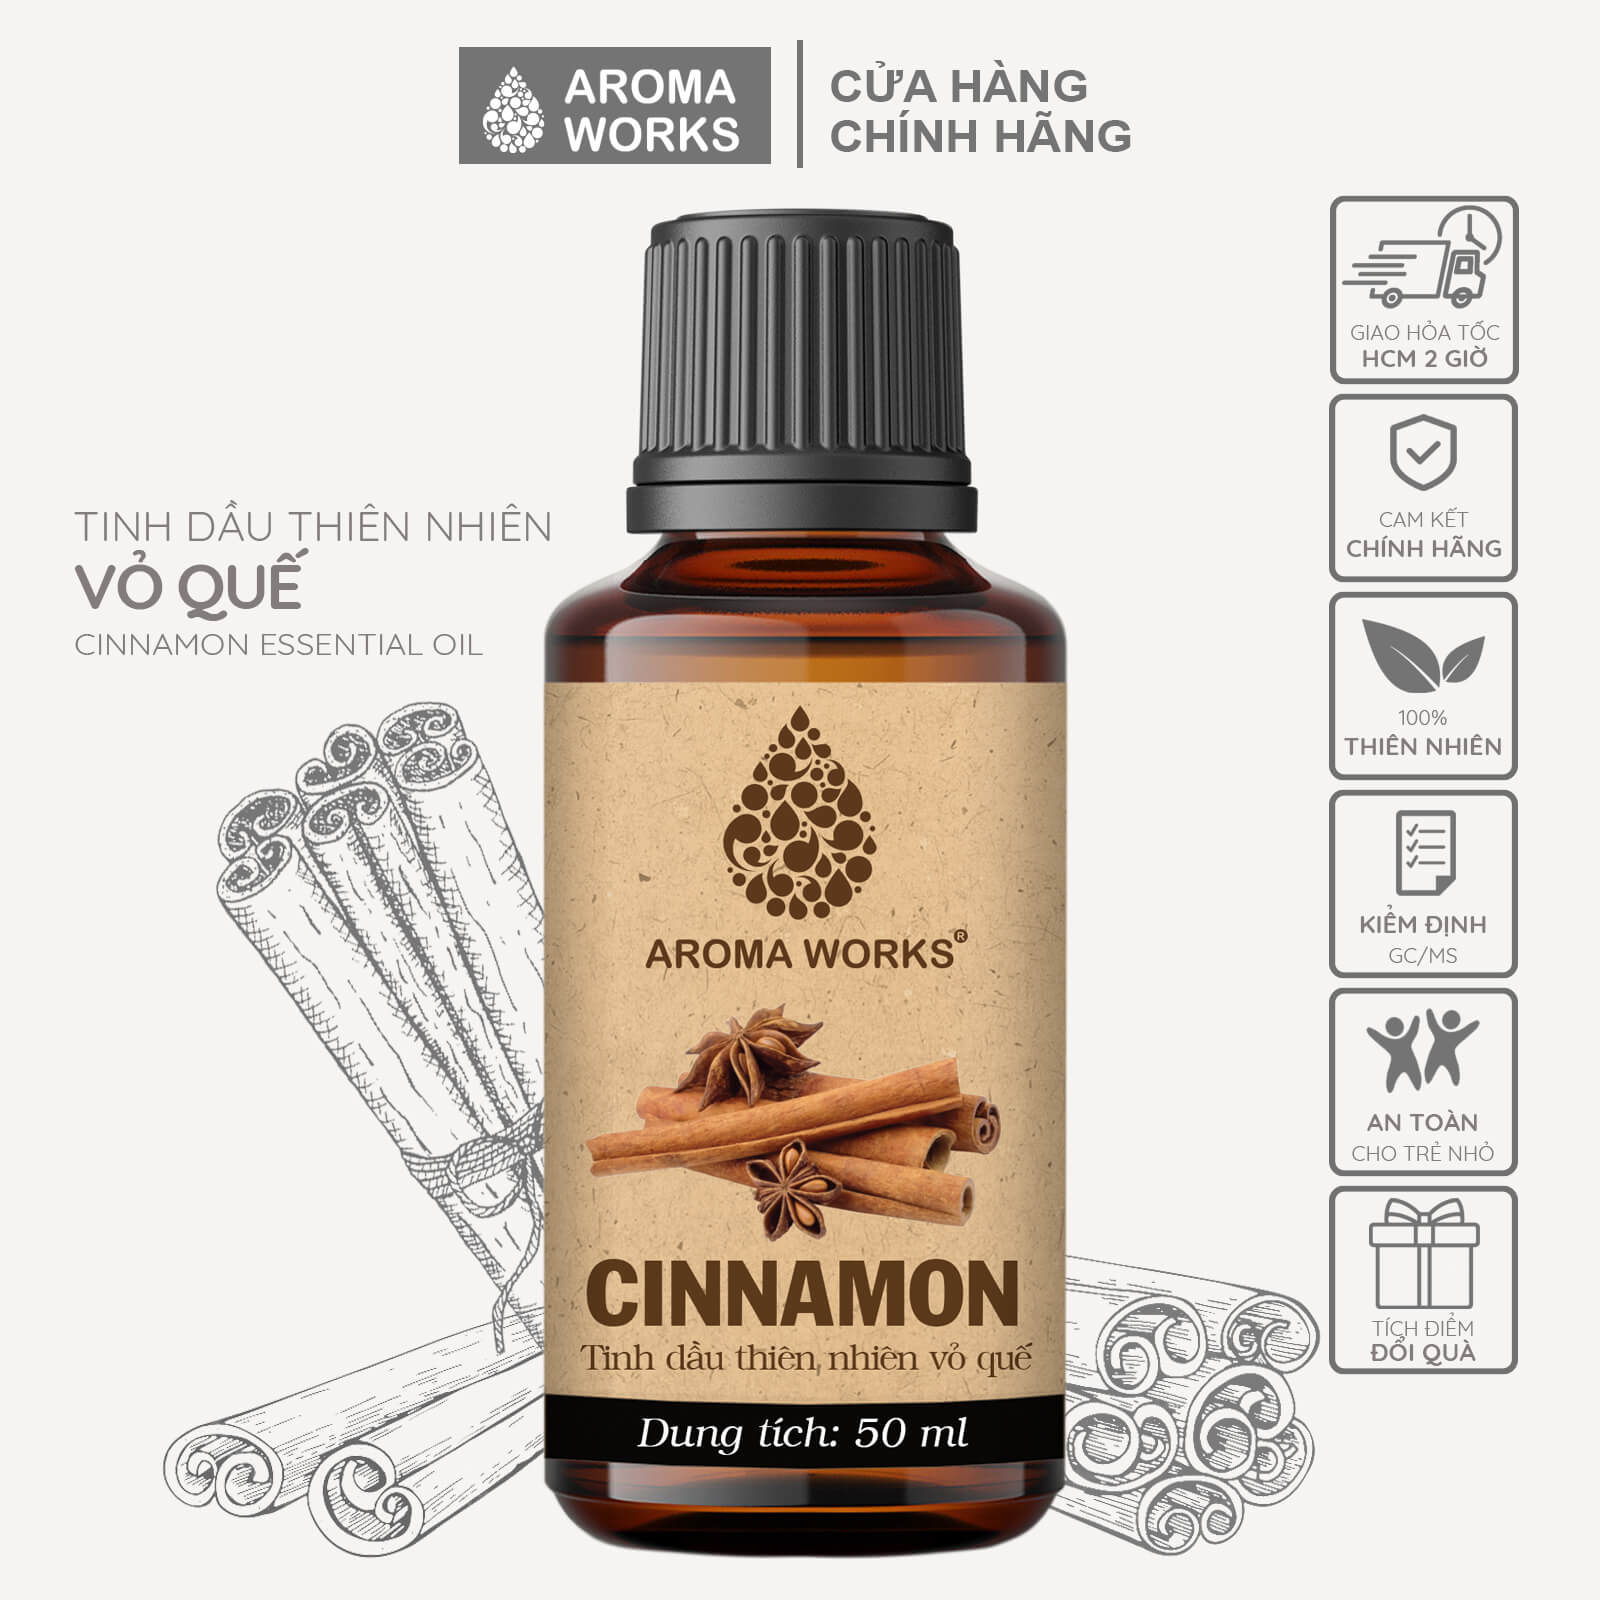 tinh-dau-que-xong-phong-duoi-muoi-khu-mui-hieu-qua-nang-cao-chat-luong-giac-ngu-aroma-works-cinnamon